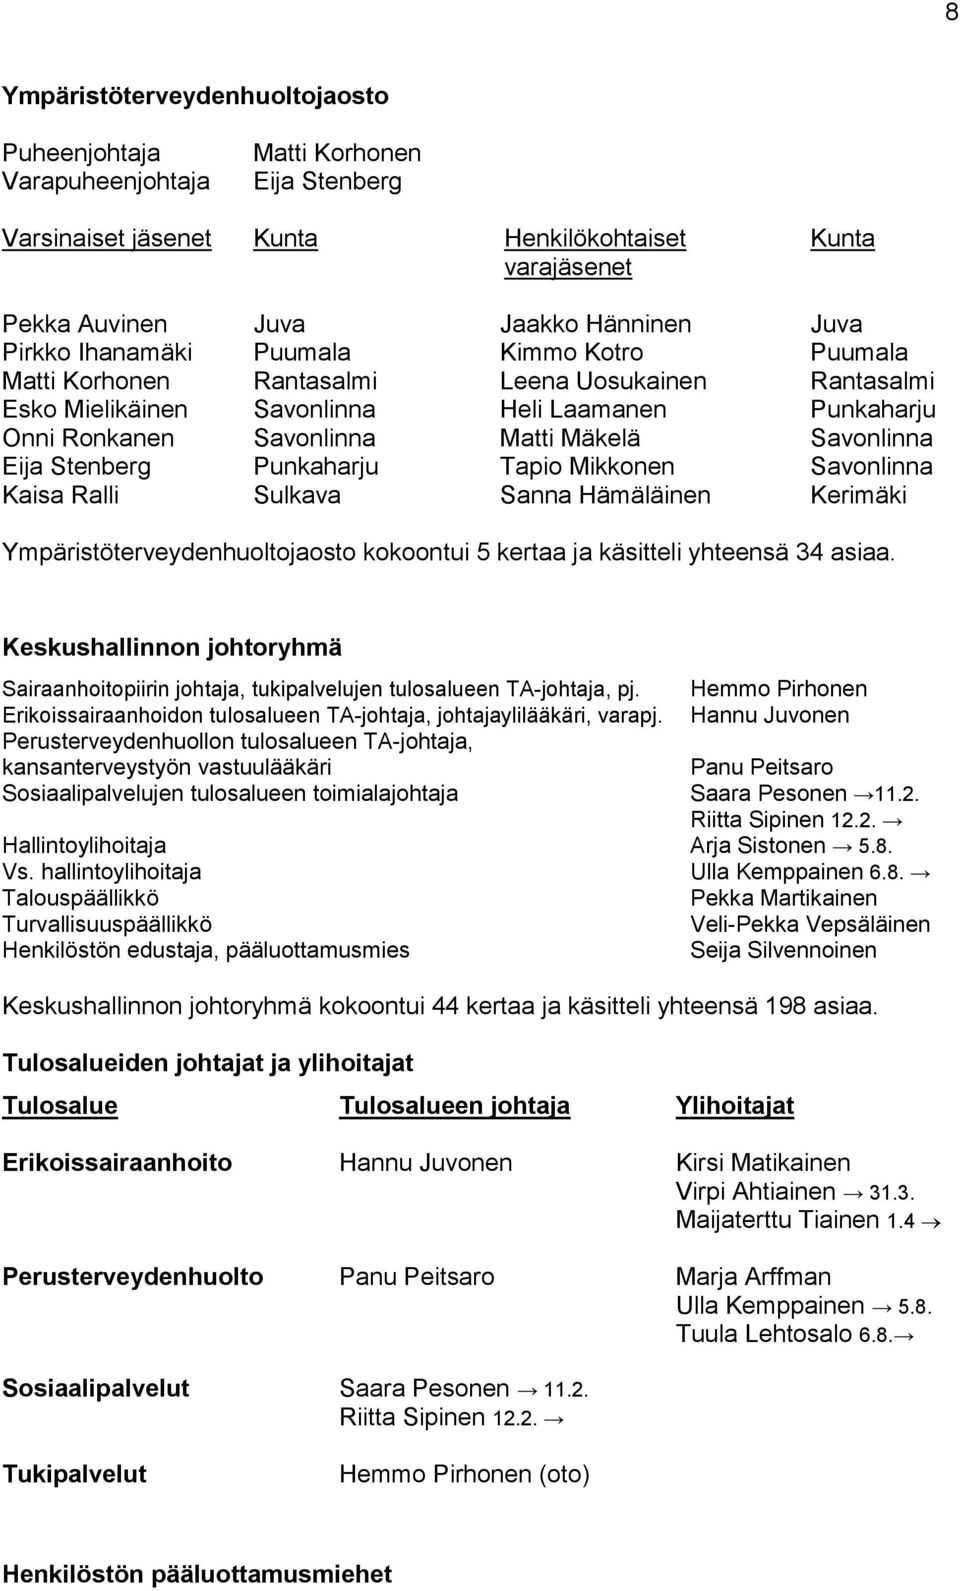 Savonlinna Eija Stenberg Punkaharju Tapio Mikkonen Savonlinna Kaisa Ralli Sulkava Sanna Hämäläinen Kerimäki Ympäristöterveydenhuoltojaosto kokoontui 5 kertaa ja käsitteli yhteensä 34 asiaa.